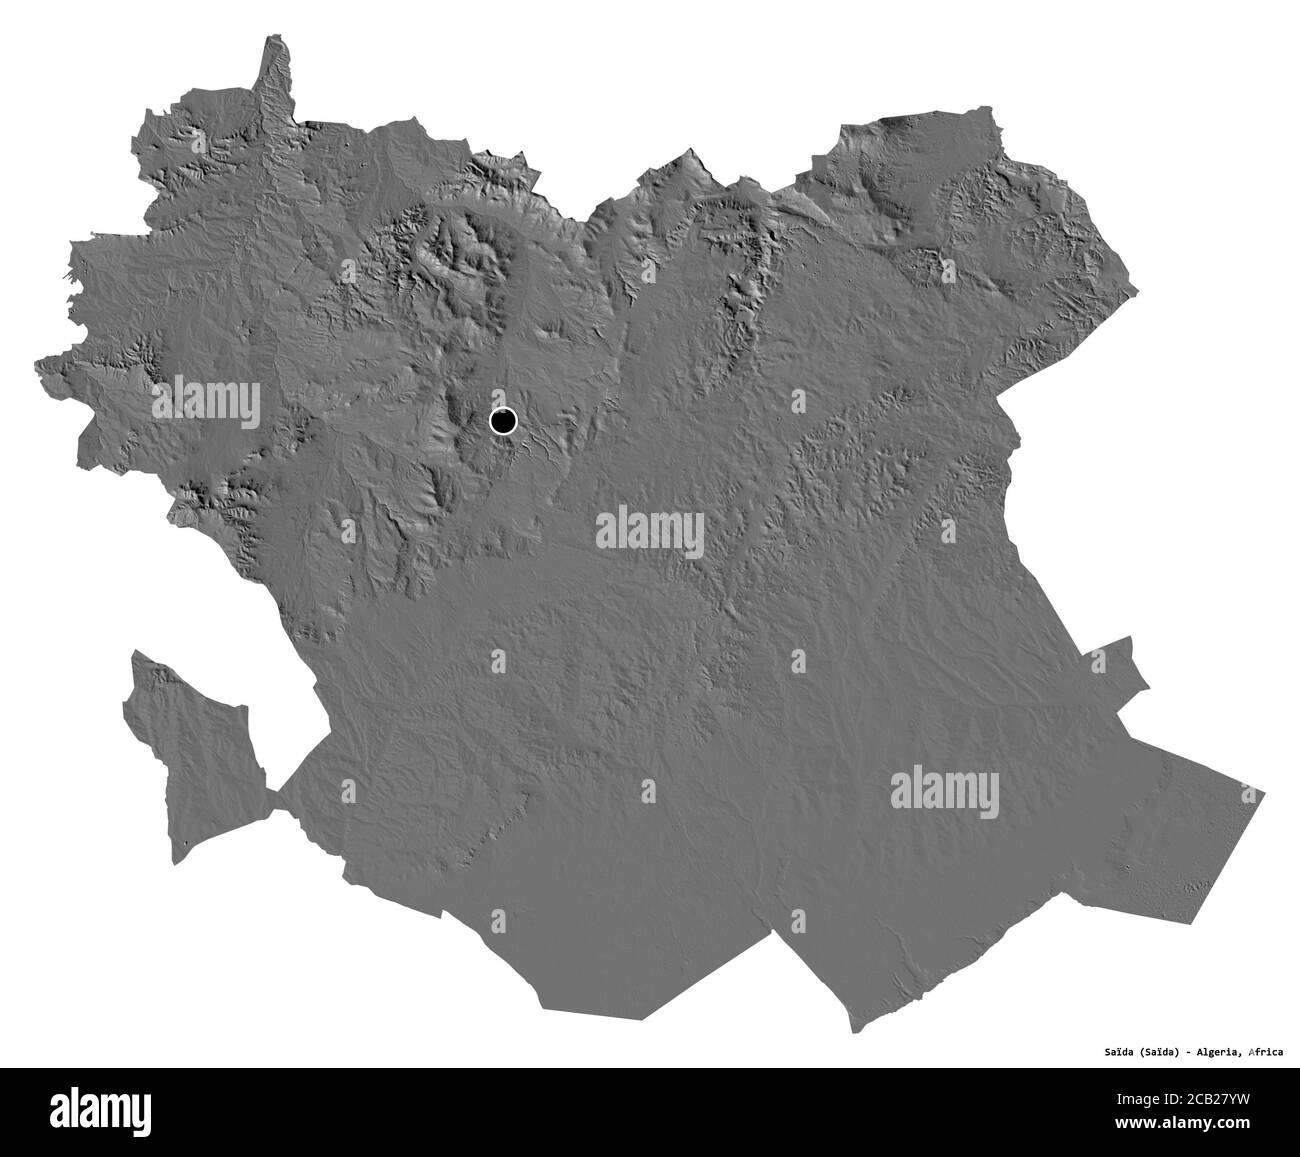 Forme de Saïda, province d'Algérie, avec sa capitale isolée sur fond blanc. Carte d'élévation à deux niveaux. Rendu 3D Banque D'Images